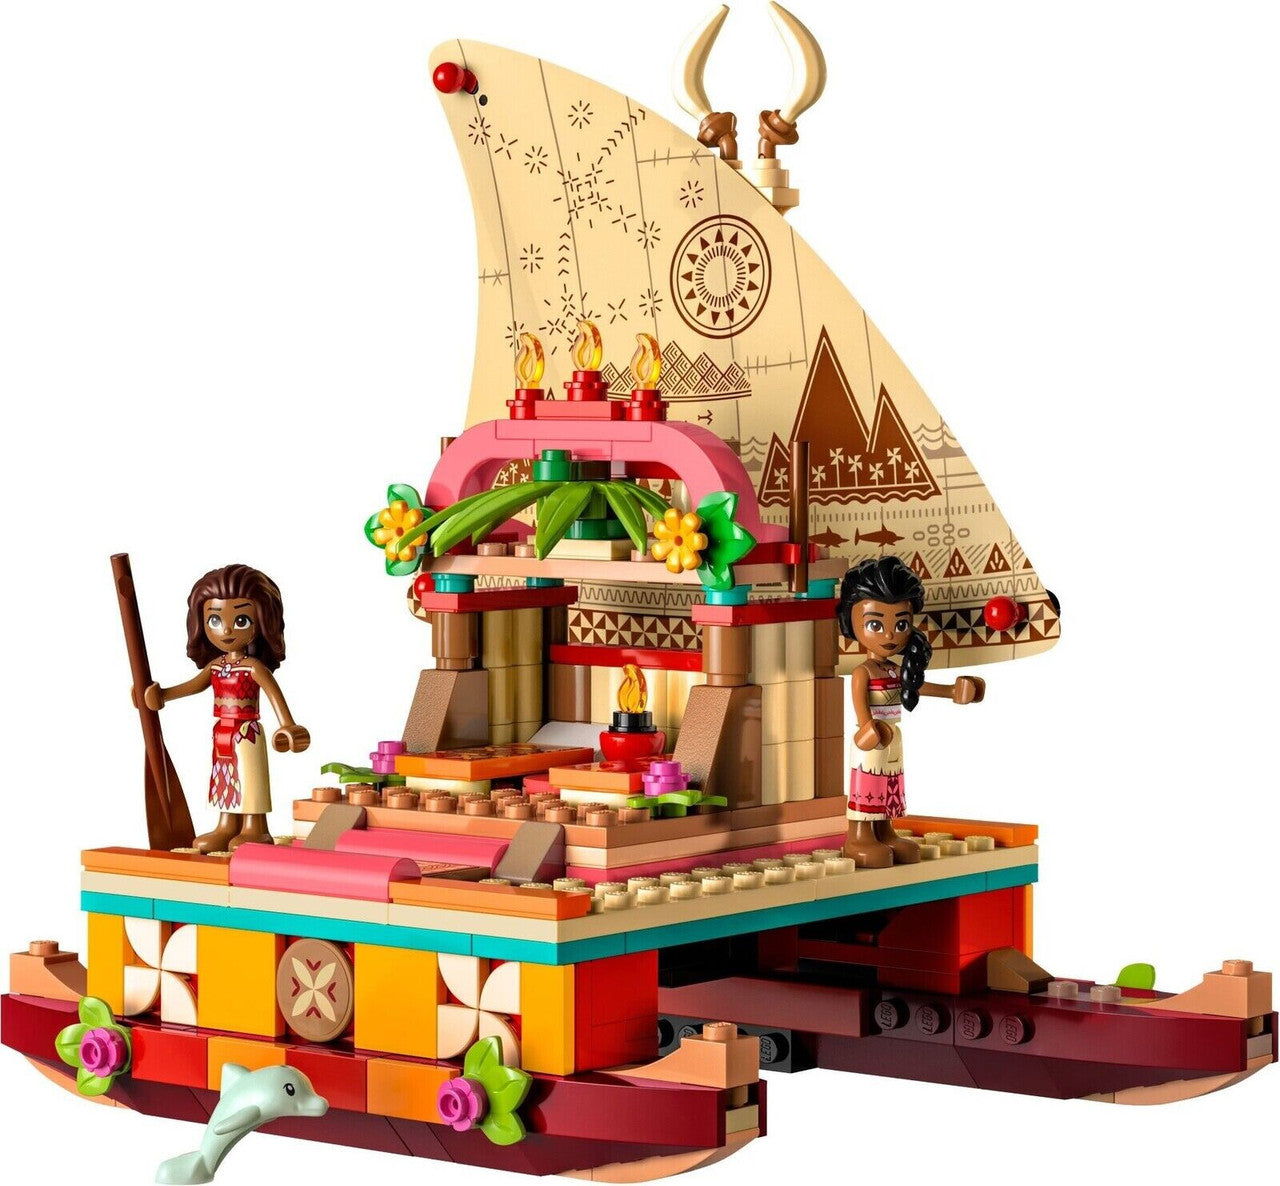 LEGO Disney Moana's Wayfinding Boat 43210